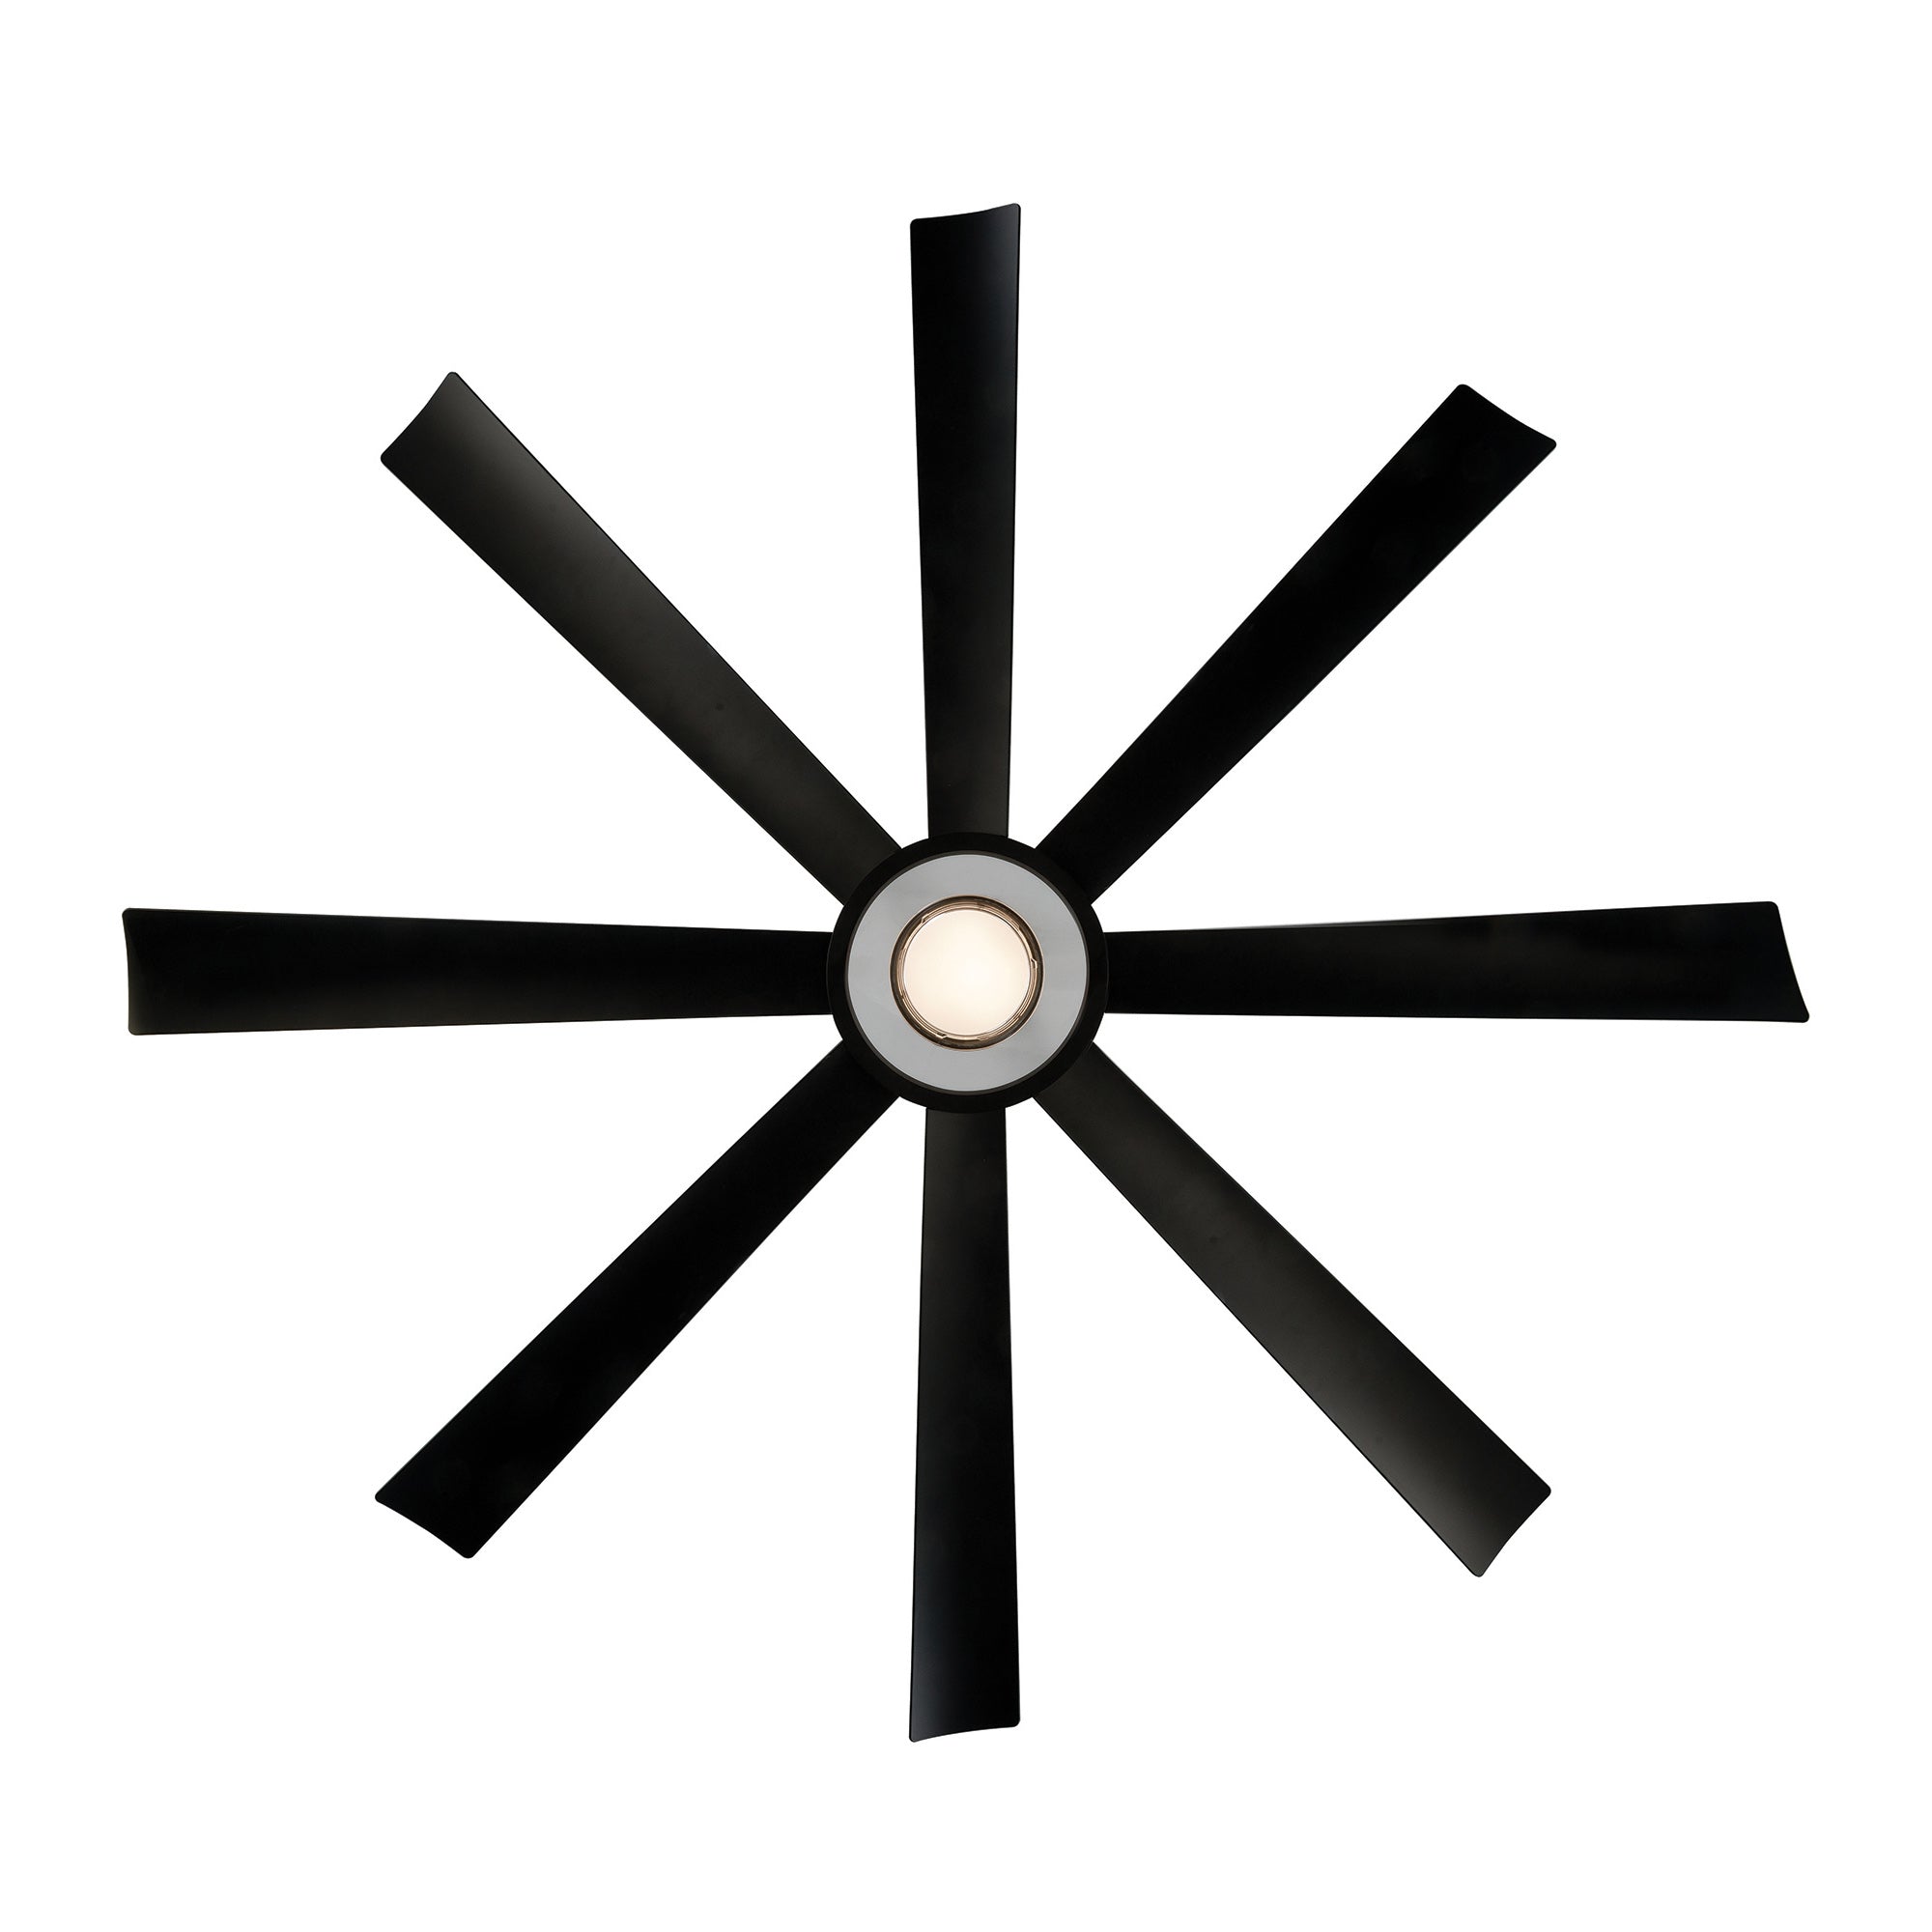 Aura Indoor/Outdoor 8-Blade 72" LED Smart Ceiling Fan